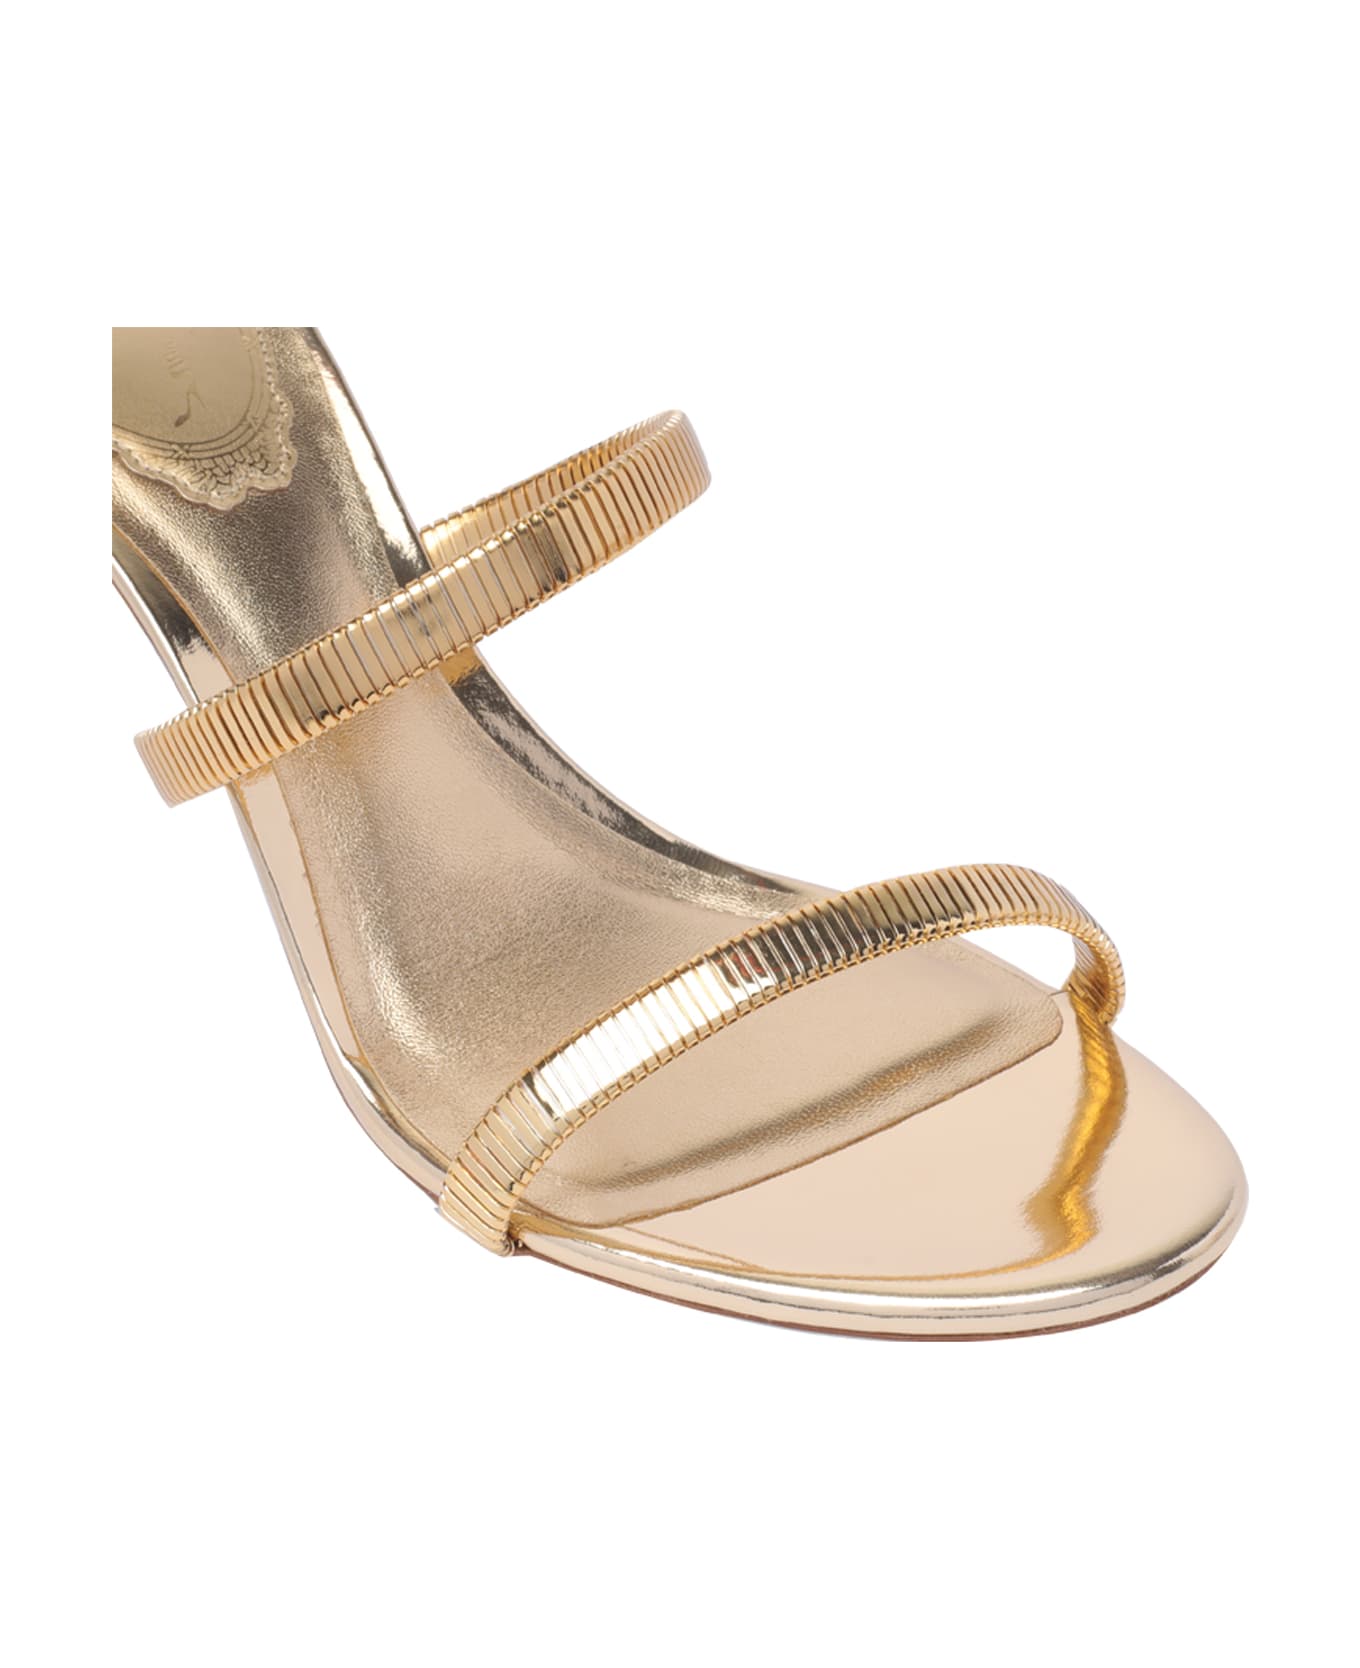 René Caovilla Cleo Pump Sandals - Golden サンダル